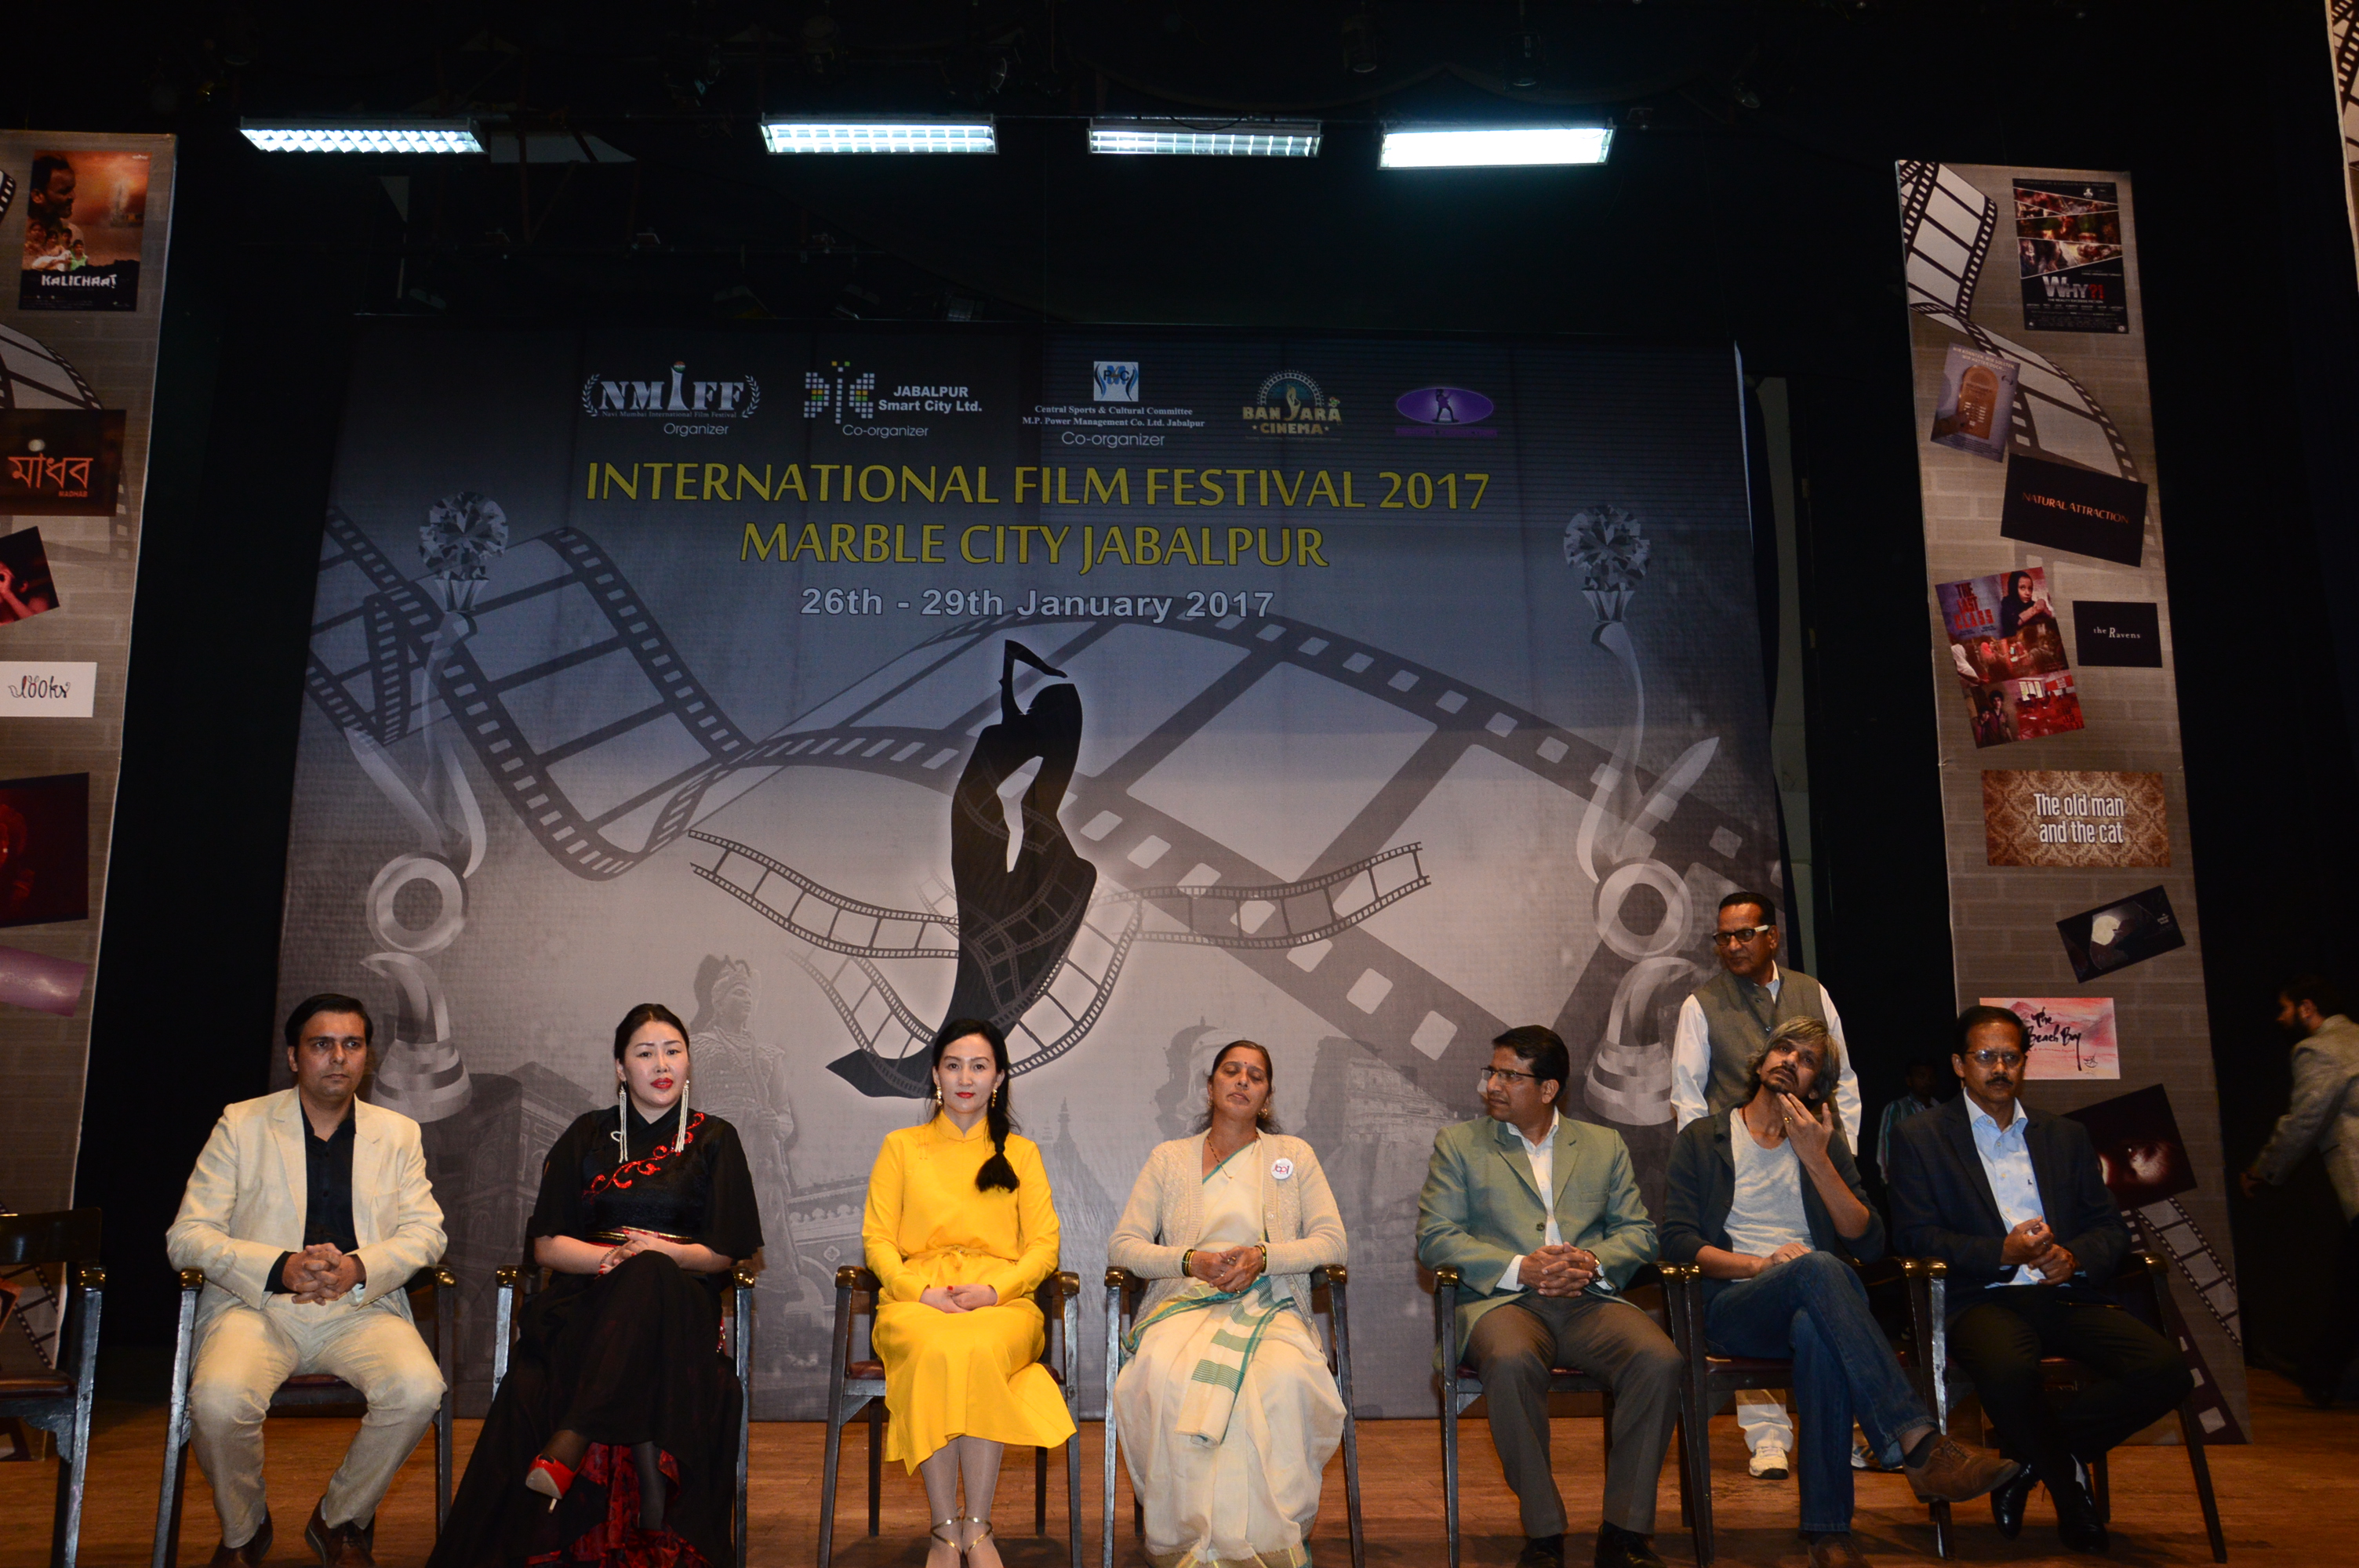 International Film Festival 2017 - Marble City Jabalpur